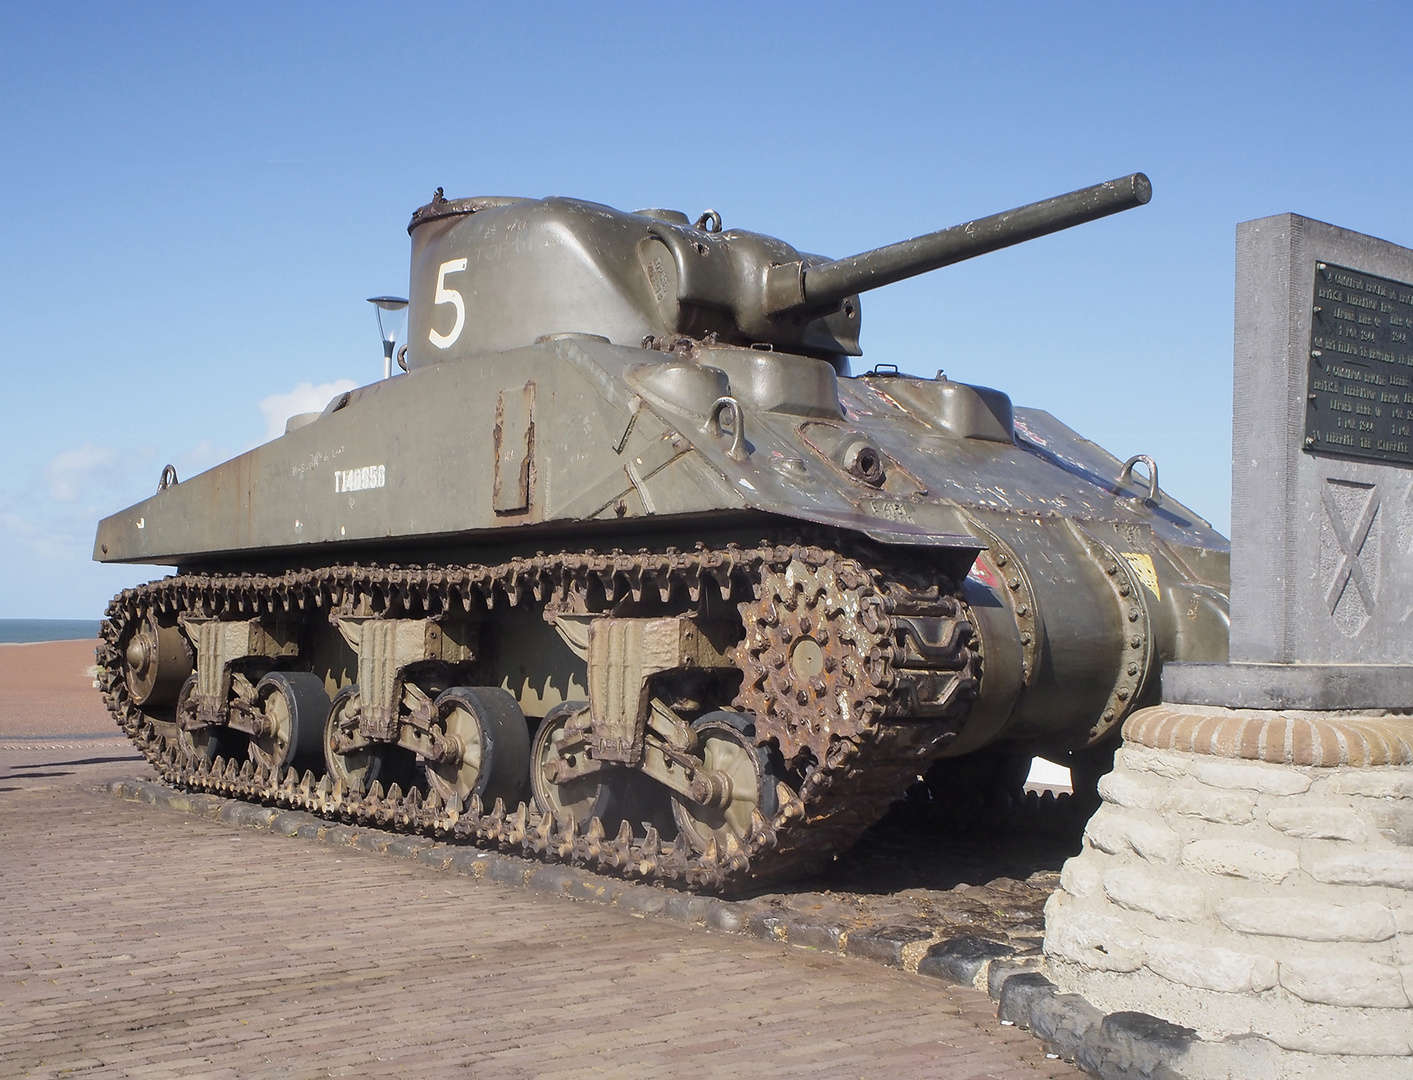 US Sherman-Panzer aus dem 2. Weltkrieg als Denkmal für die Landung der Alliierten